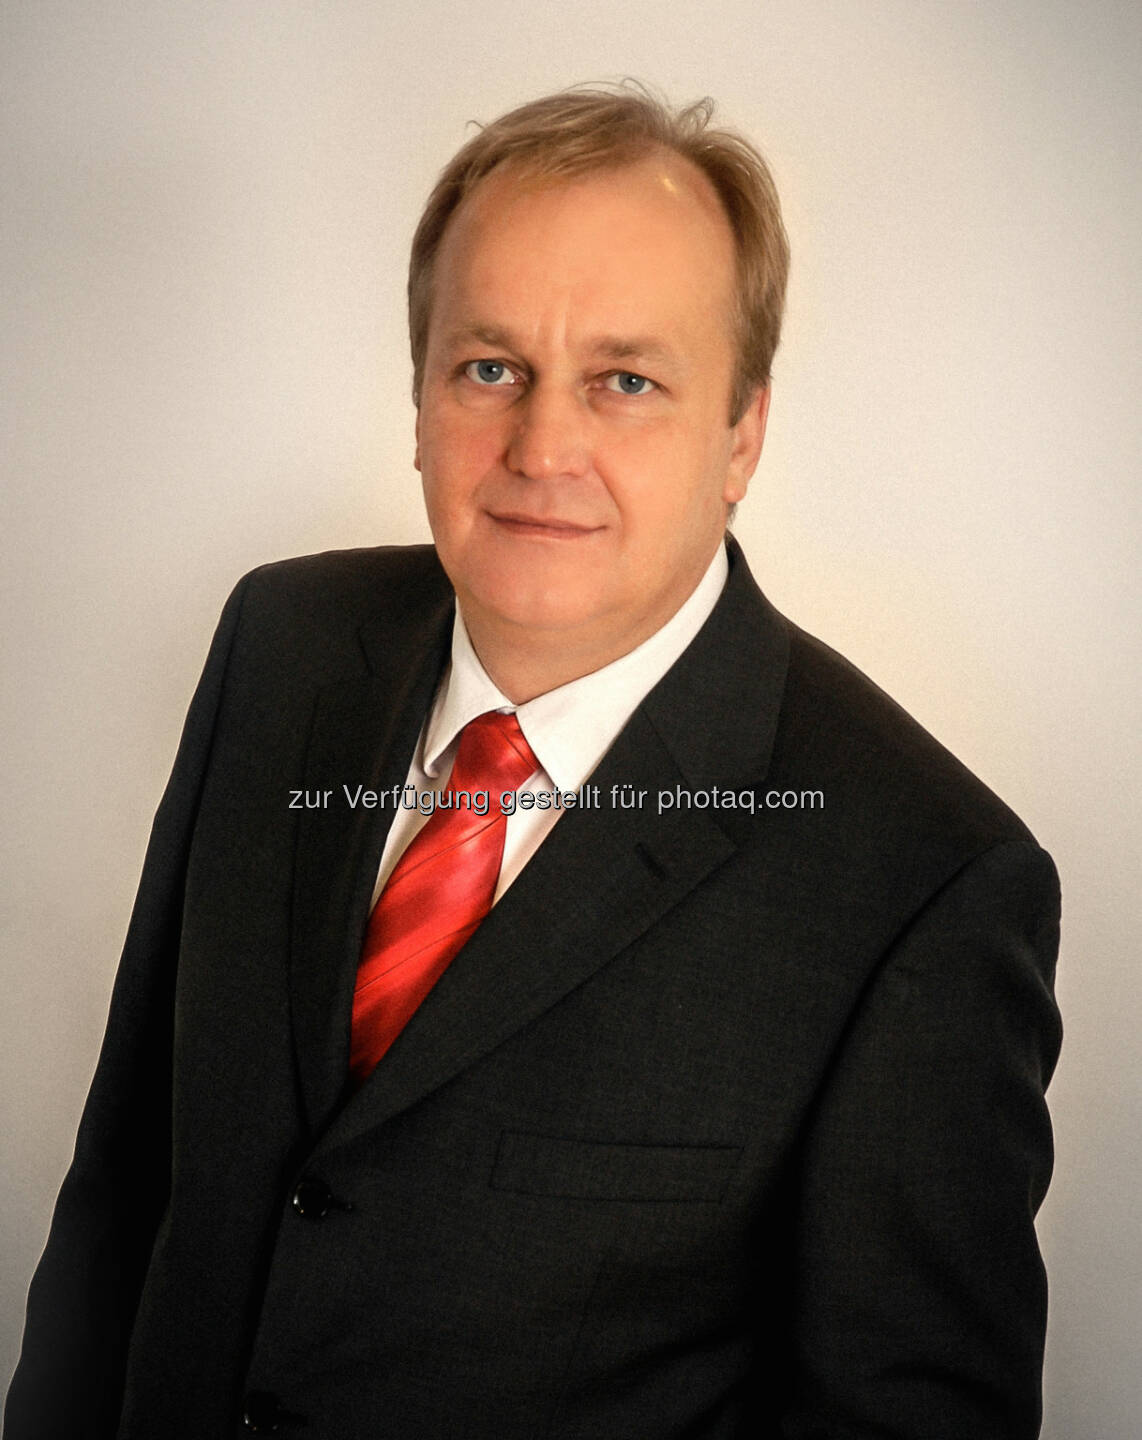 Christian Reimitz: Engin-Deniz Rechtsanwälte Attorneys at Law: „Real Estate Law Experts“: Christian Reimitz bester Immobilienrechtsanwalt in Österreich 2014/15